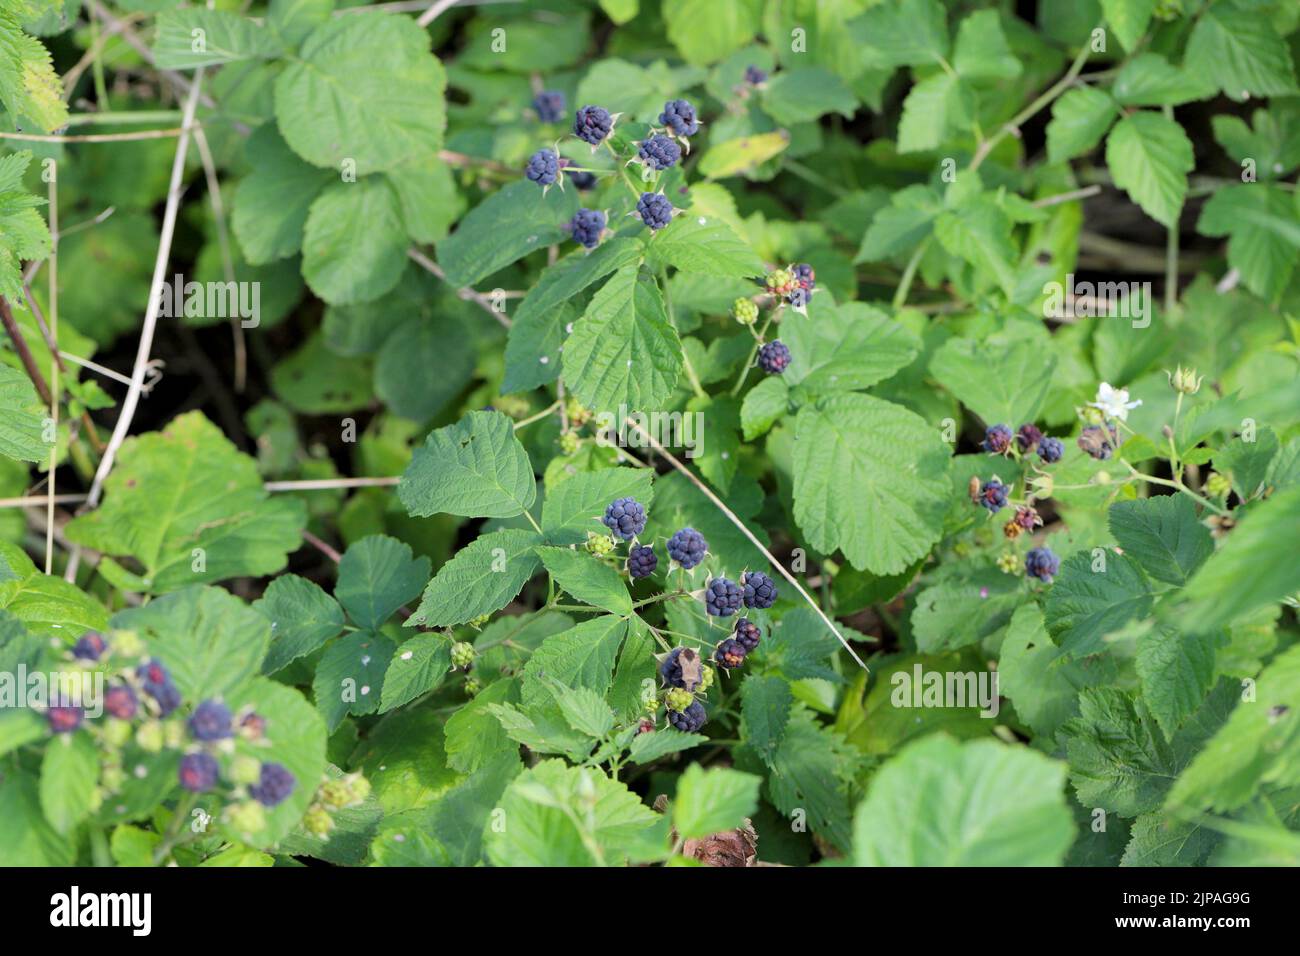 European Dewberry (Rubus caesius). Fruit on shrubs in summer. Stock Photo